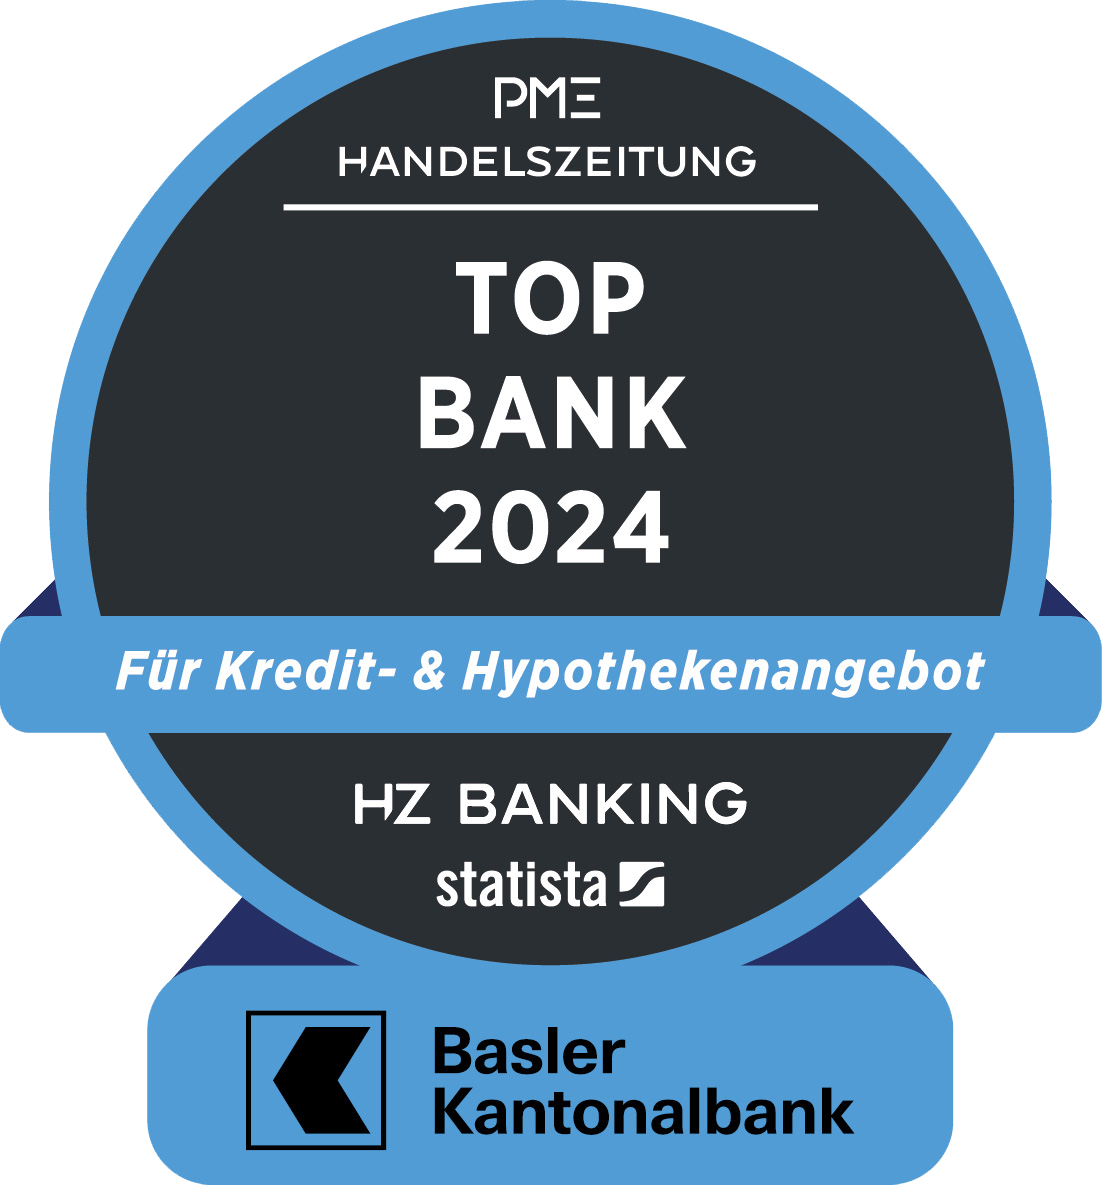 Auszeichnung Top Bank 2024 - Für Kredit- & Hypothekenangebot